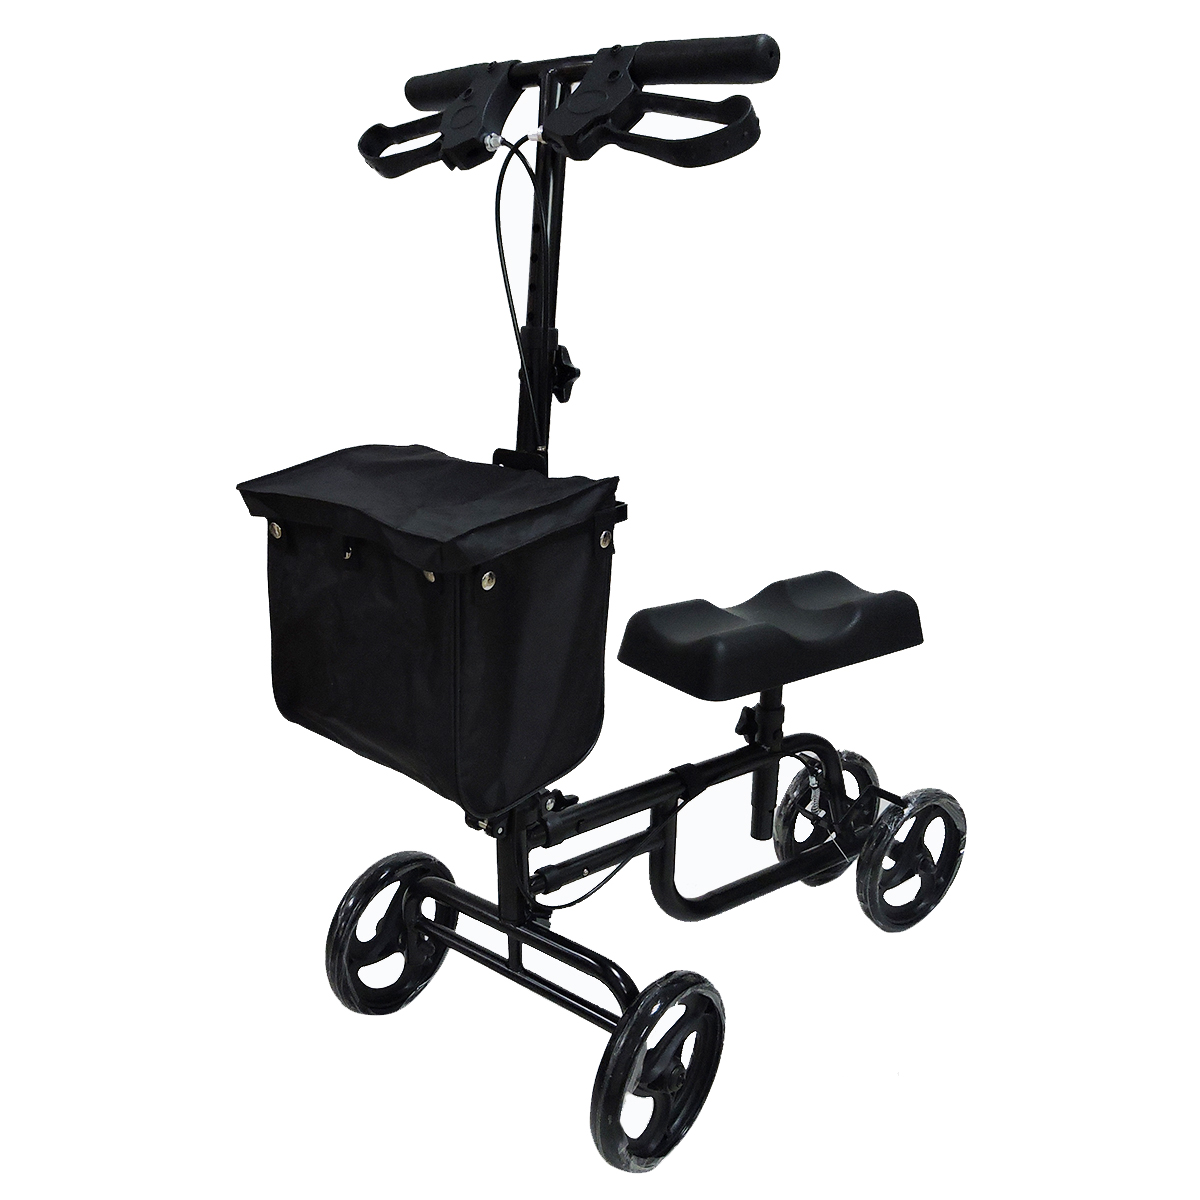 Mobility-Knee-Walker-Scooter-Roller-Crutch-Leg-Steerable-Foldable-Design-Adjustable-Height-Adjustabl-1940054-6